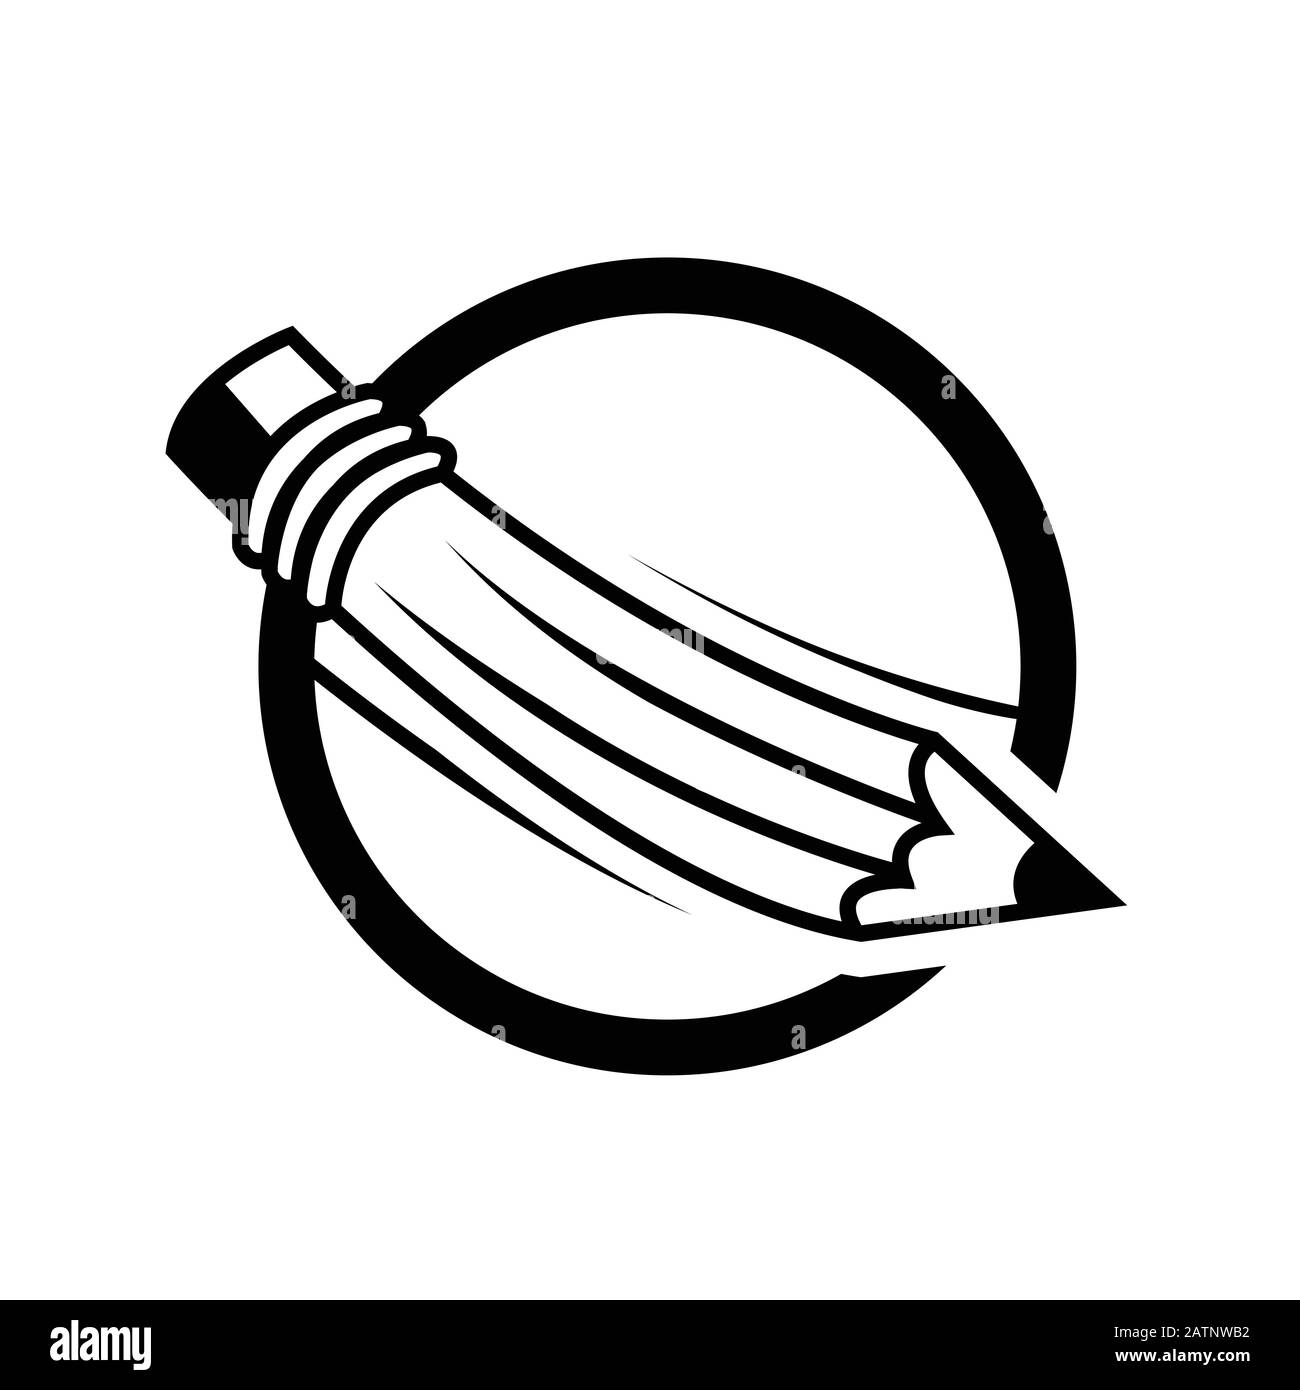 Illustrazione vettoriale delle linee di disegno della penna stilografica, della matita e della penna a sfera. Le linee si trovano su un livello separato. Illustrazione Vettoriale